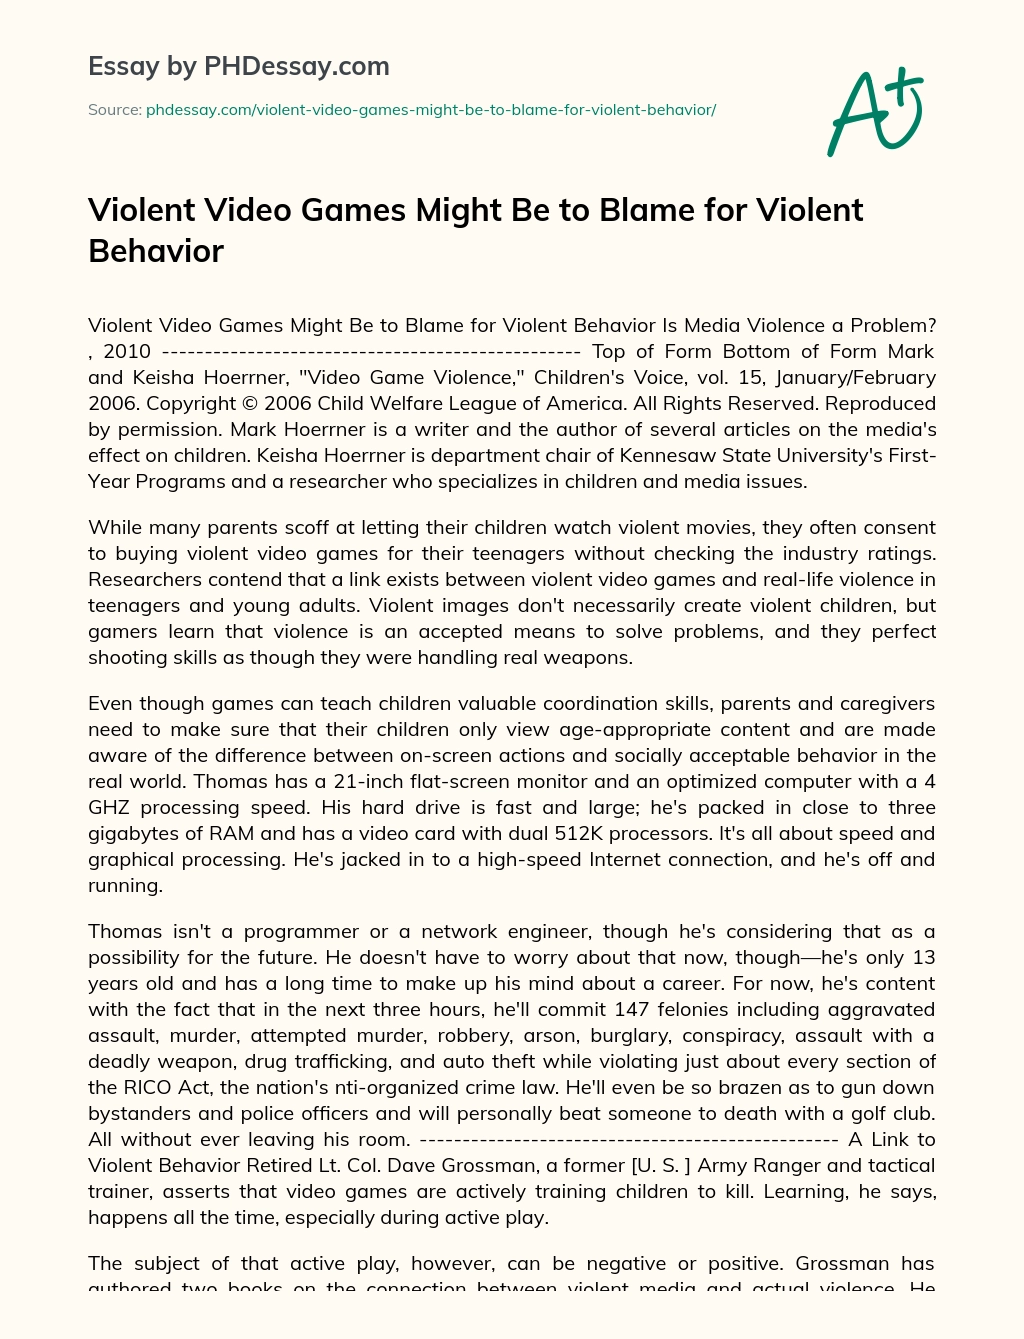 Violent Video Games Might Be to Blame for Violent Behavior essay